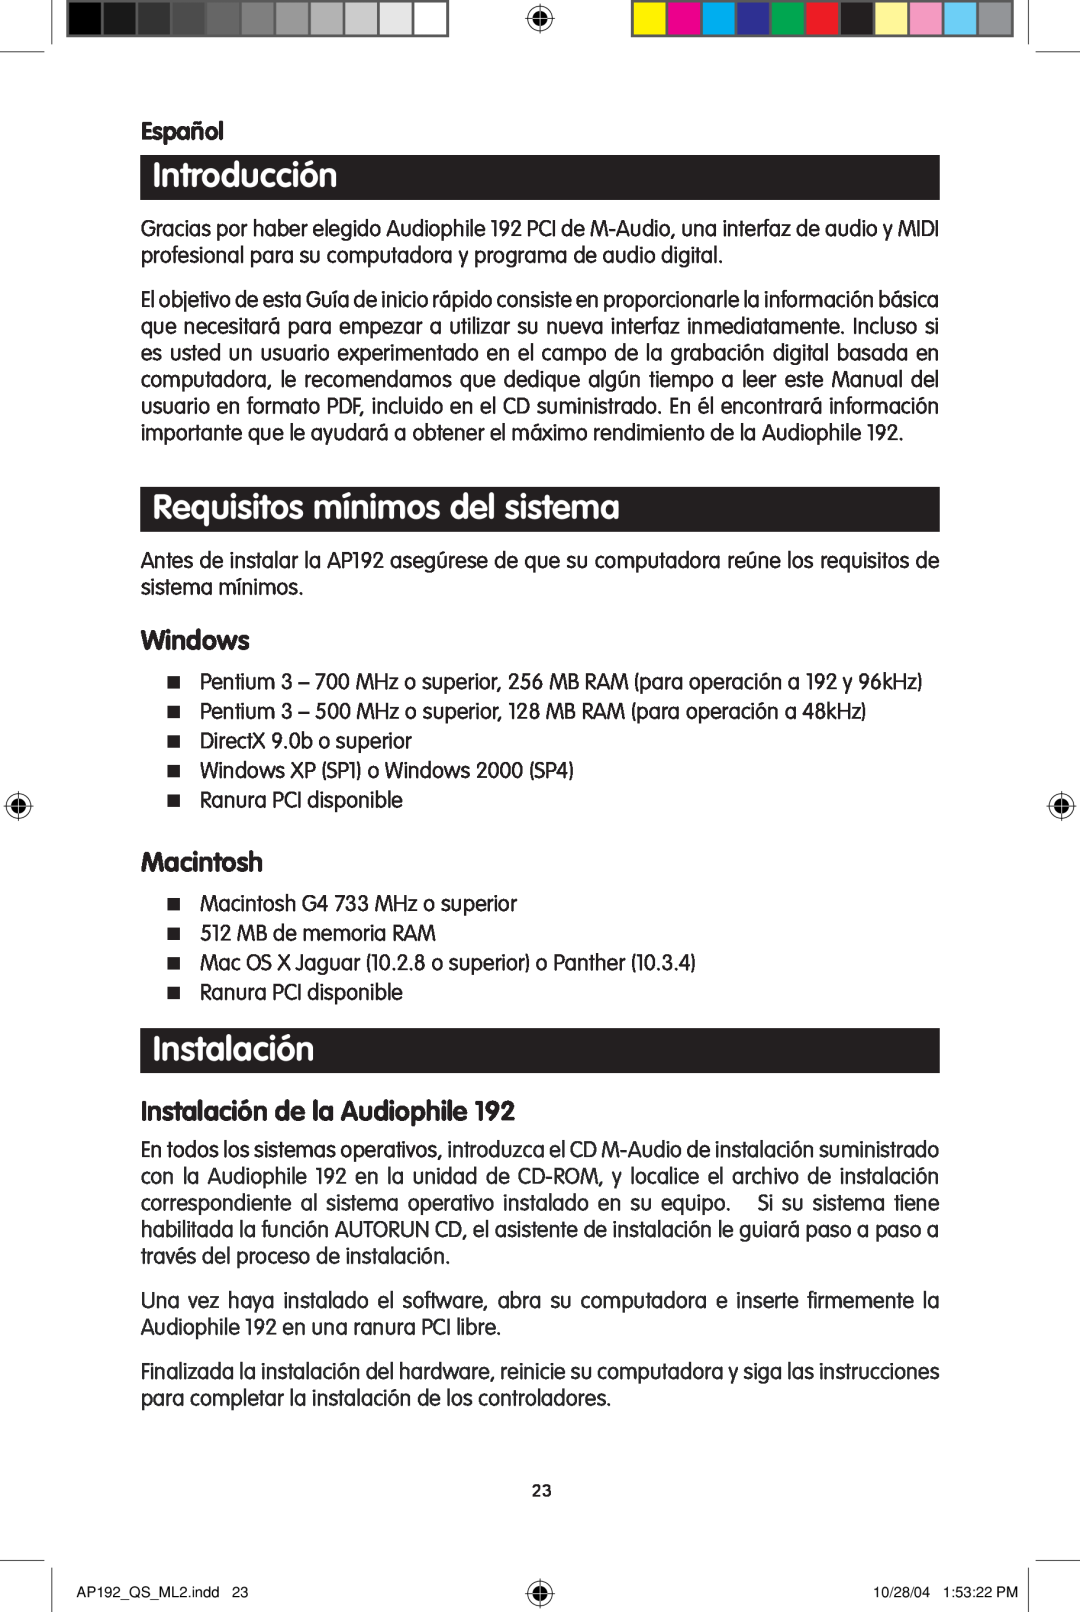 M-Audio 192s Introducción, Requisitos mínimos del sistema, Instalación de la Audiophile, Español, Windows, Macintosh 